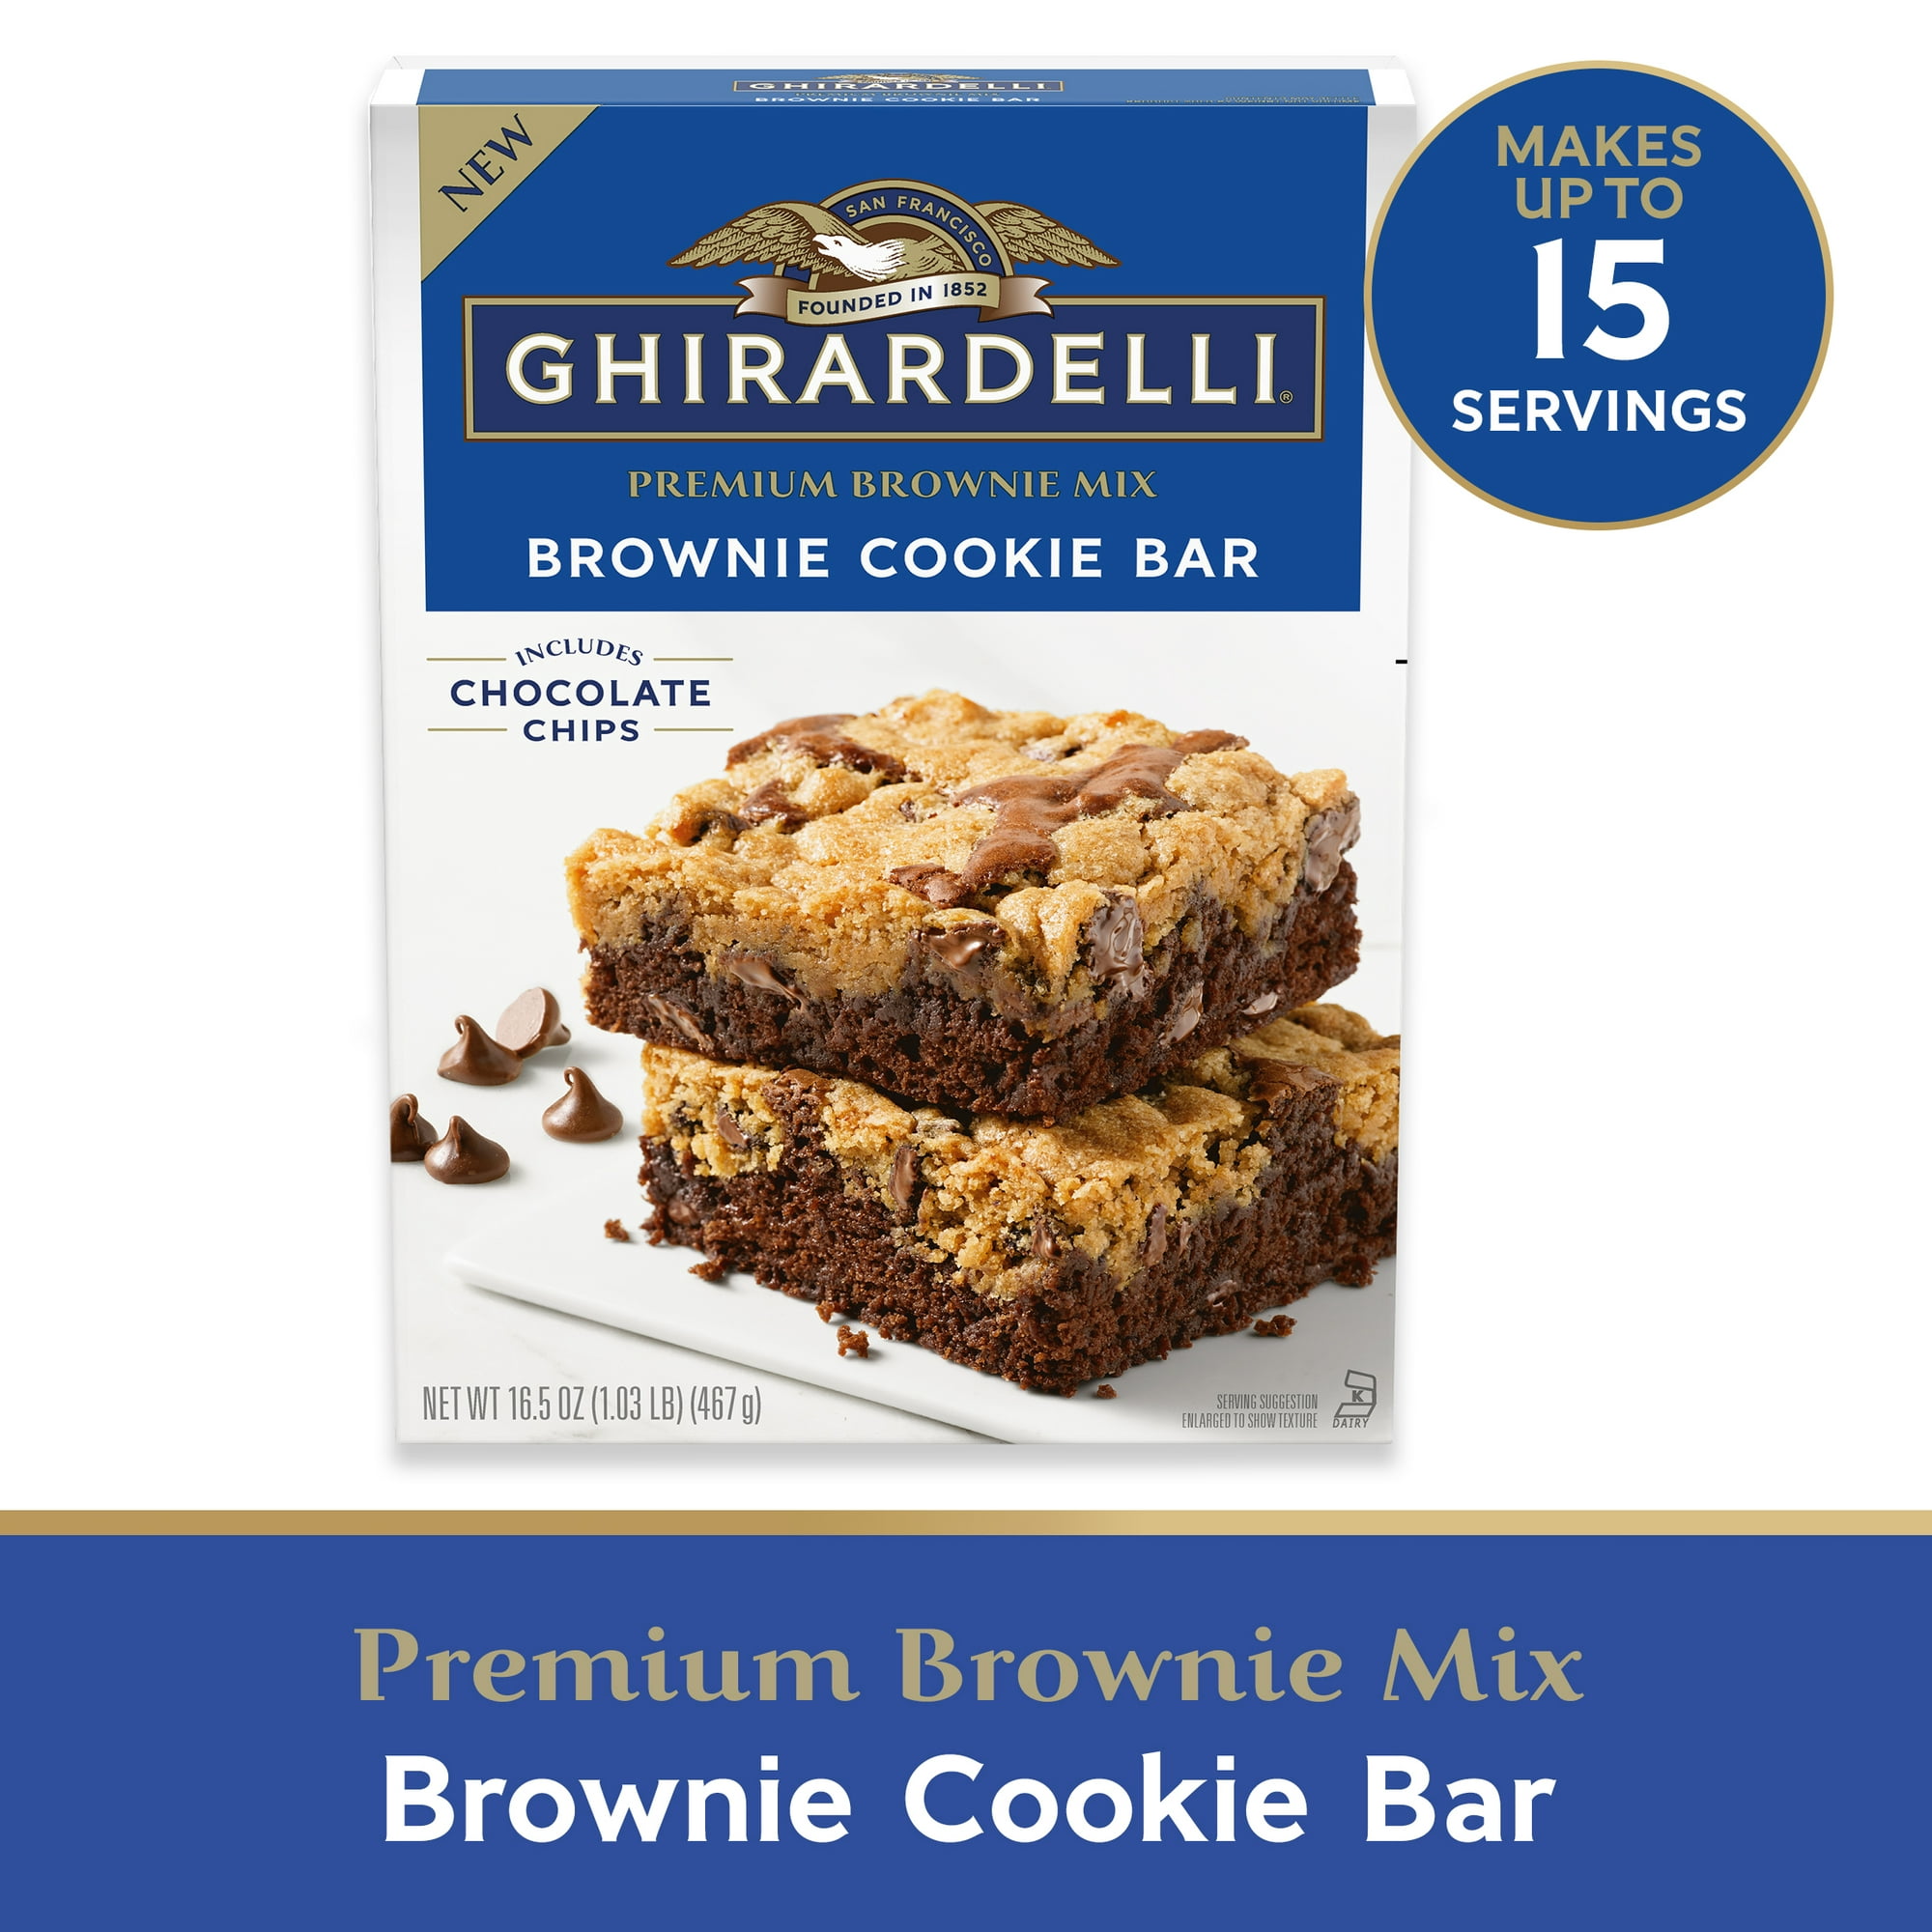 Ghirardelli-Brownie-Cookie-Bar-Premium-Brownie-Mix-16-5-oz-Box_49c84dd5-9275-404a-91b6-c89550ed101c.1ddf55dc167fc2dfcaadbac375617b97.jpeg